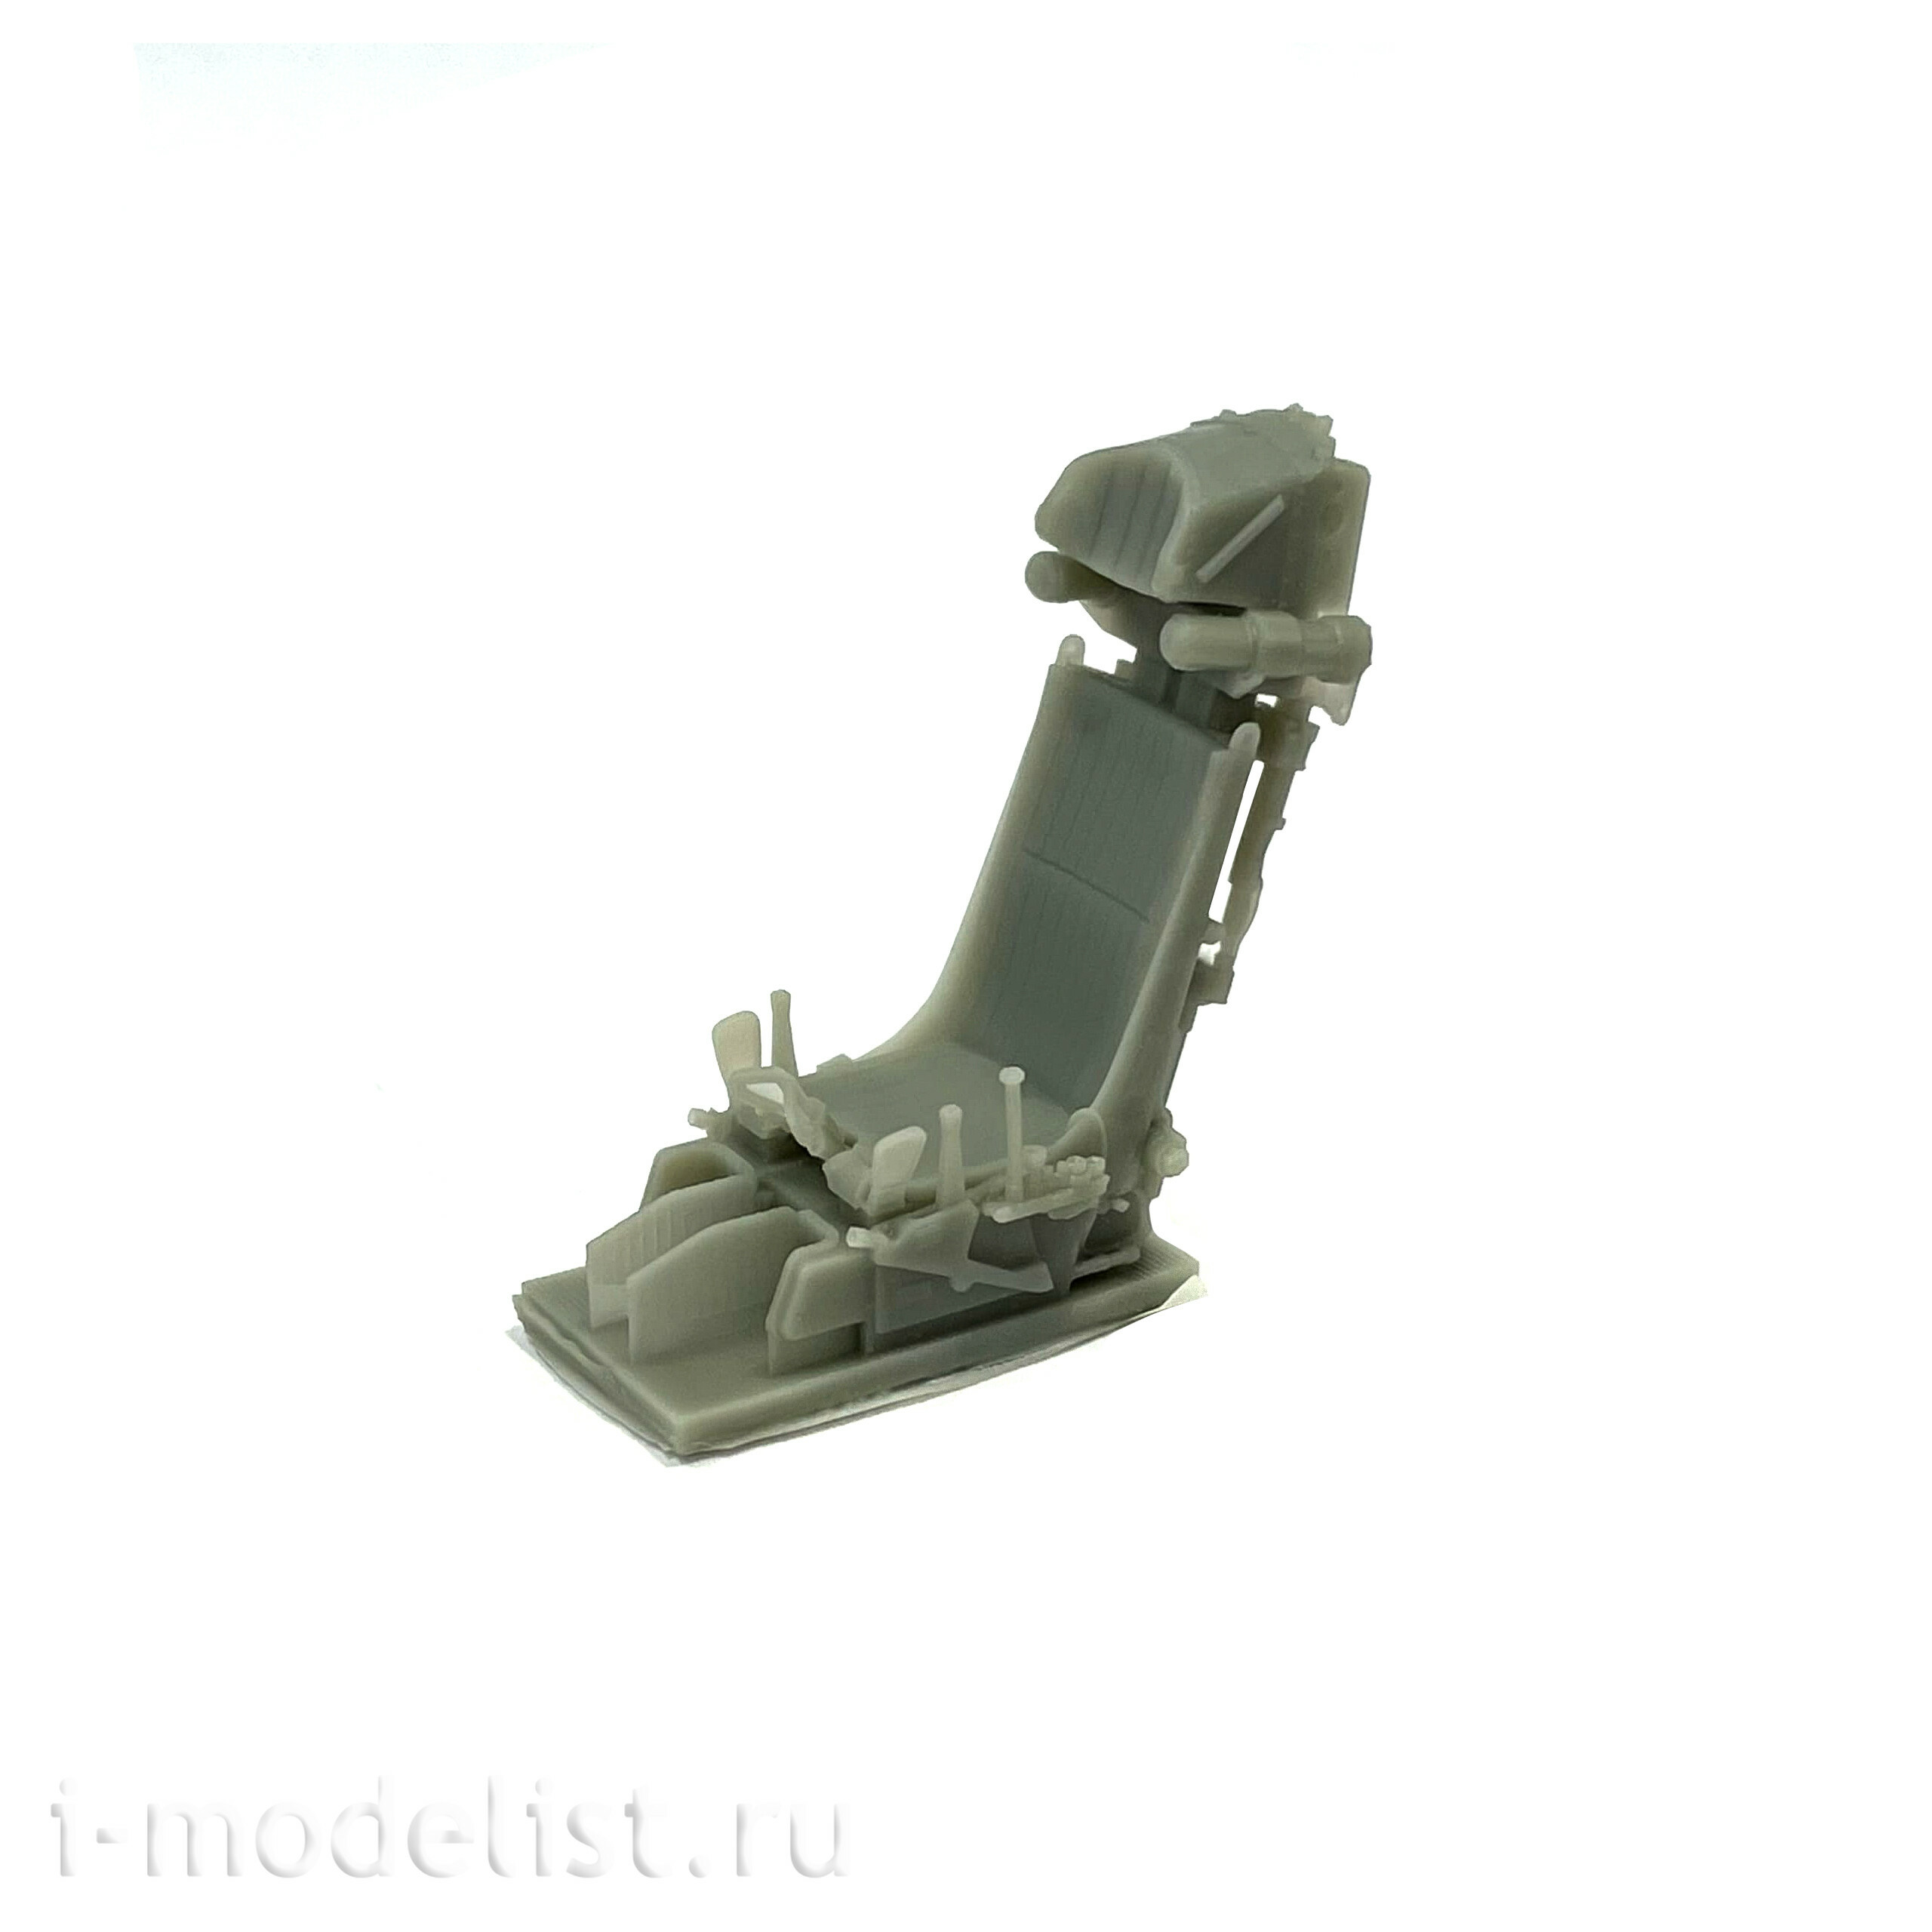 RS48020 Э.В.М. 1/48  Высокодетализированное смоляное кресло К-36Л для модели Советский штурмовик Су-25 фирмы 